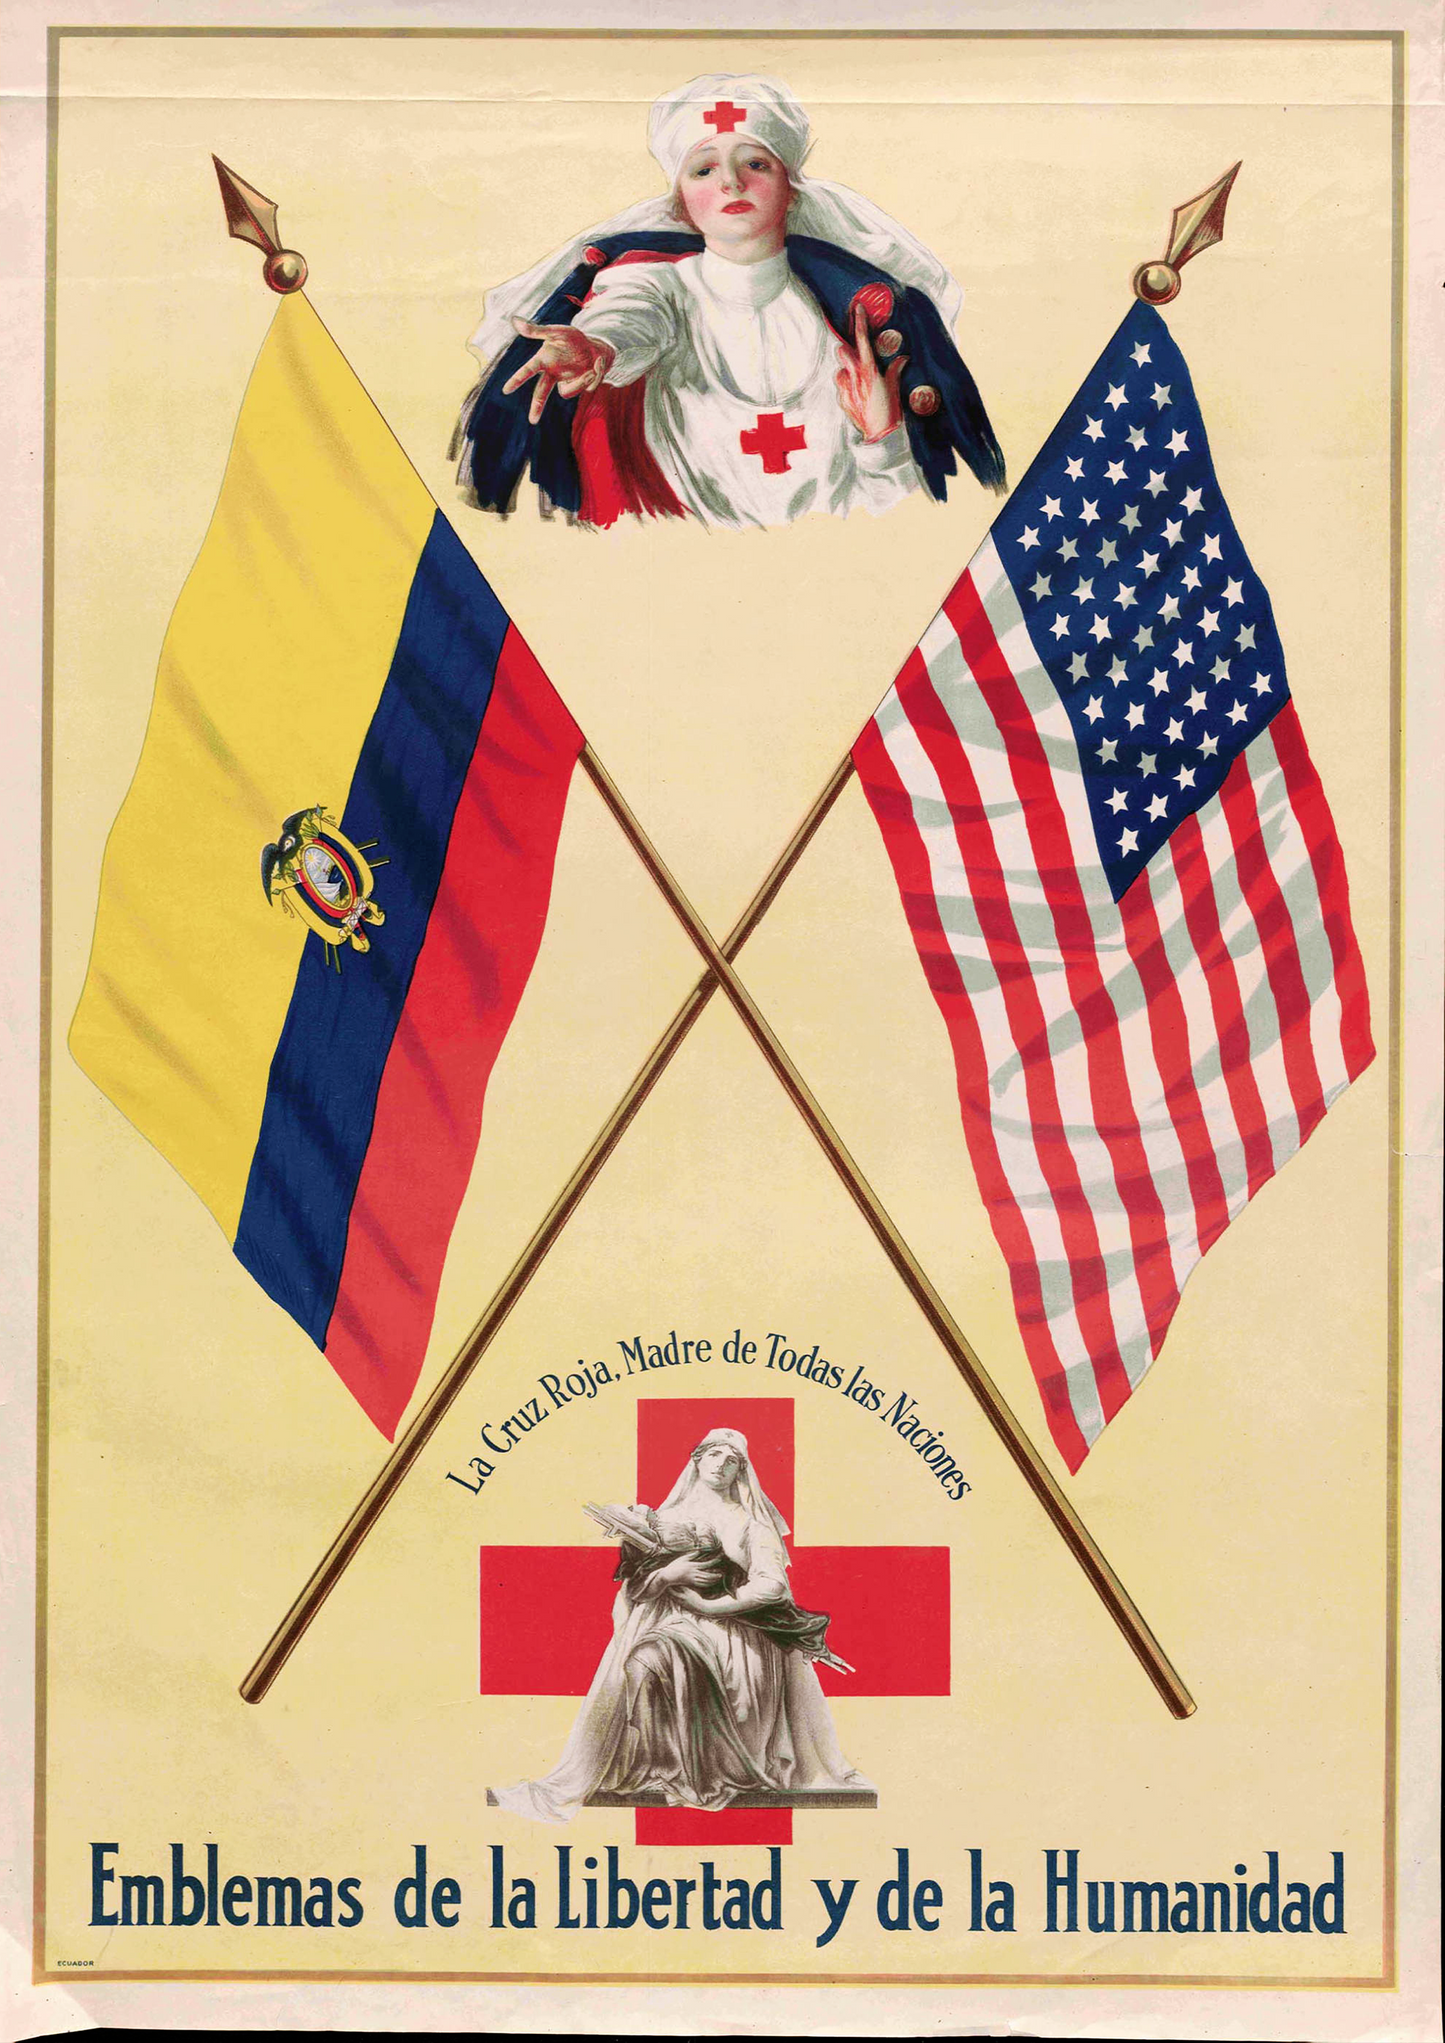 USA - Ecuador Friendship Poster